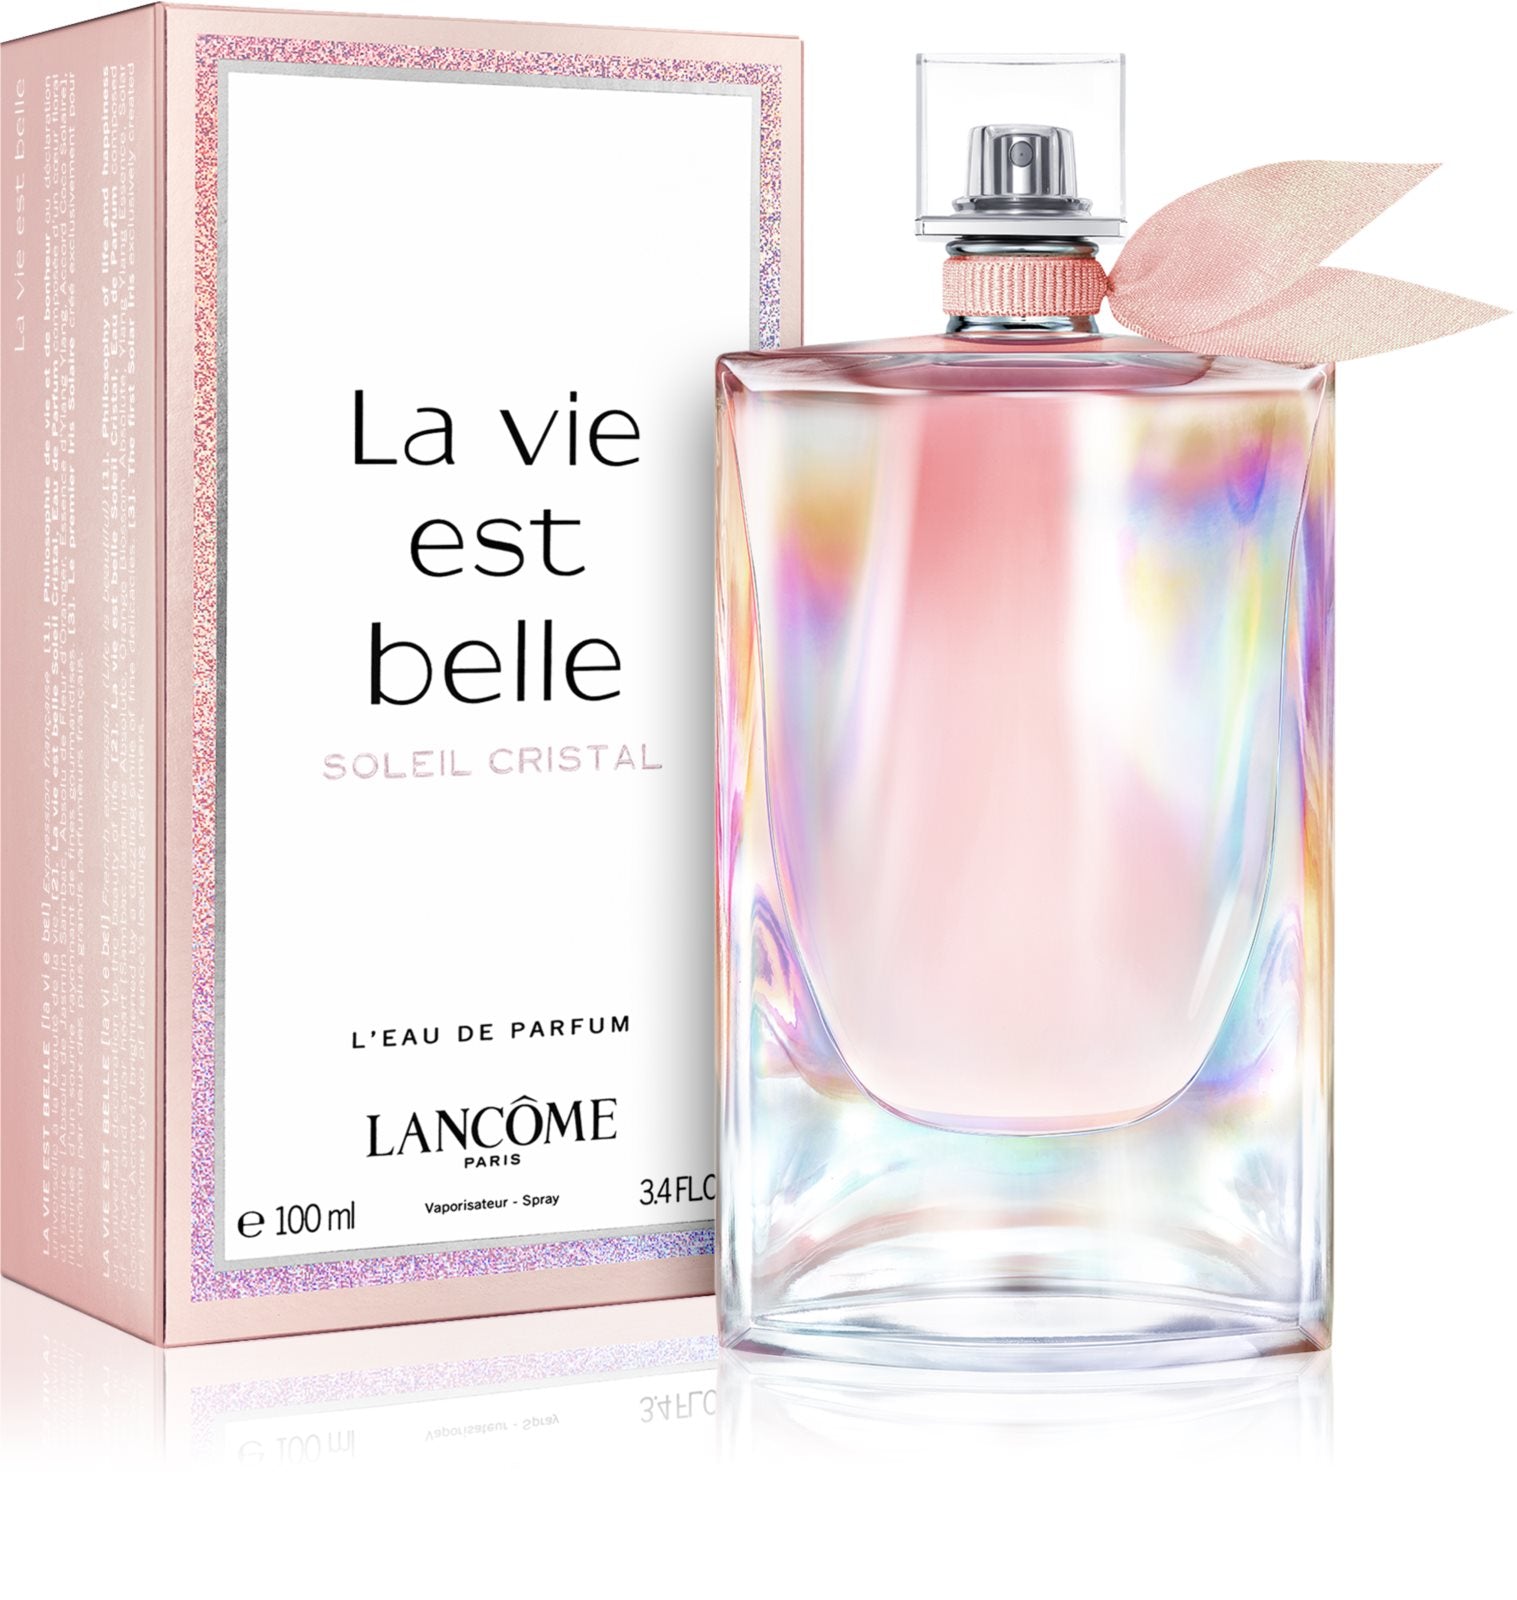 Lancôme La vie belle Soleil crystal L'Eau de Parfum 100 ml – BS24 Switzerland AG